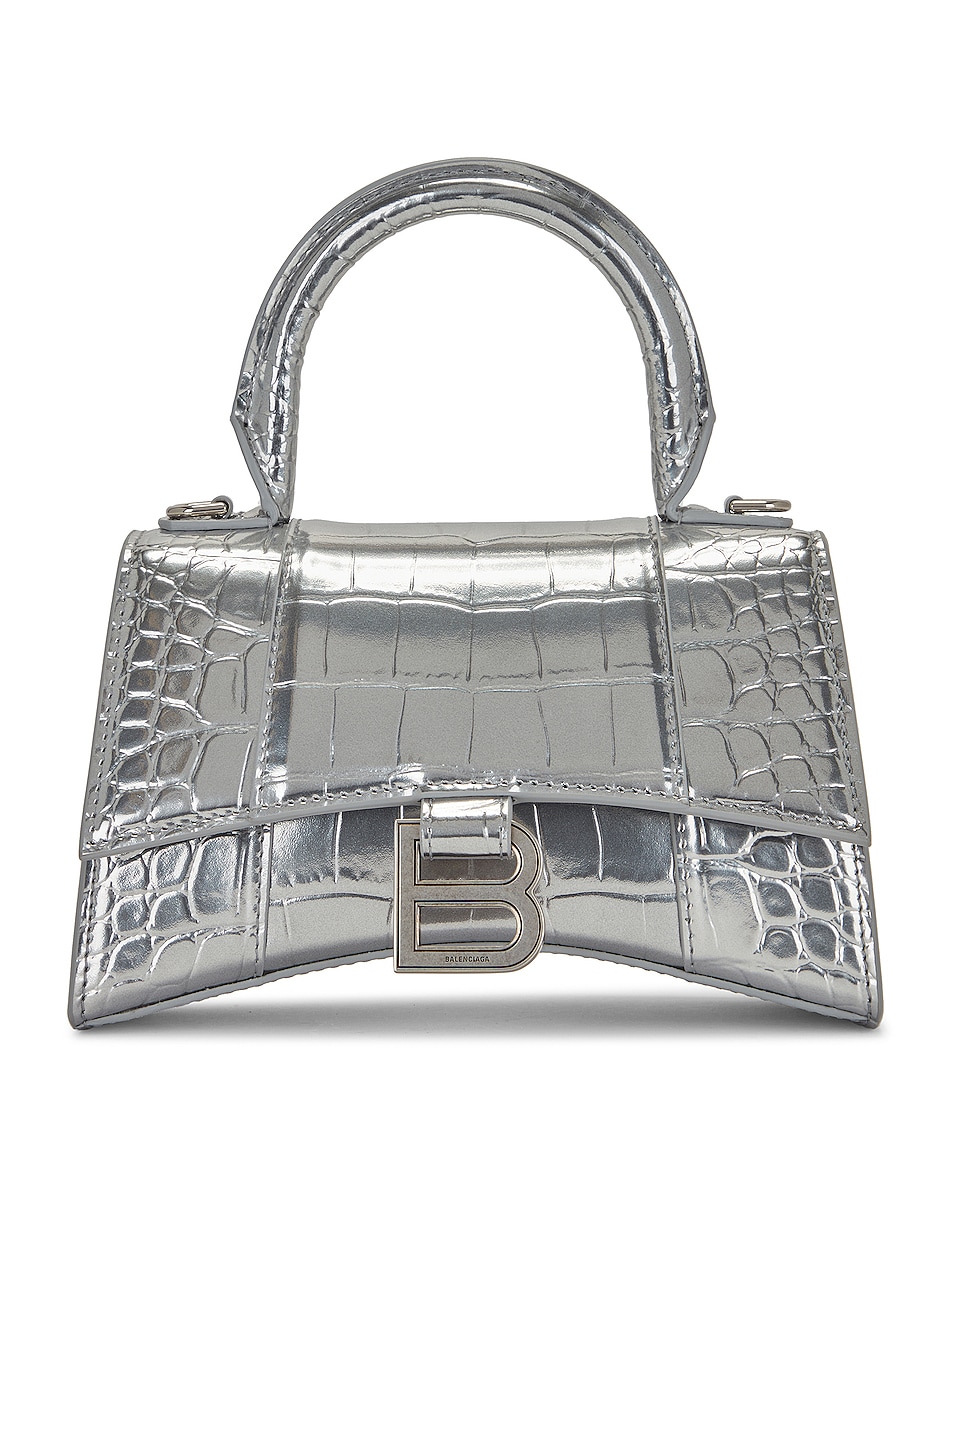 XS Hourglass Top Handle Bag in Metallic Silver